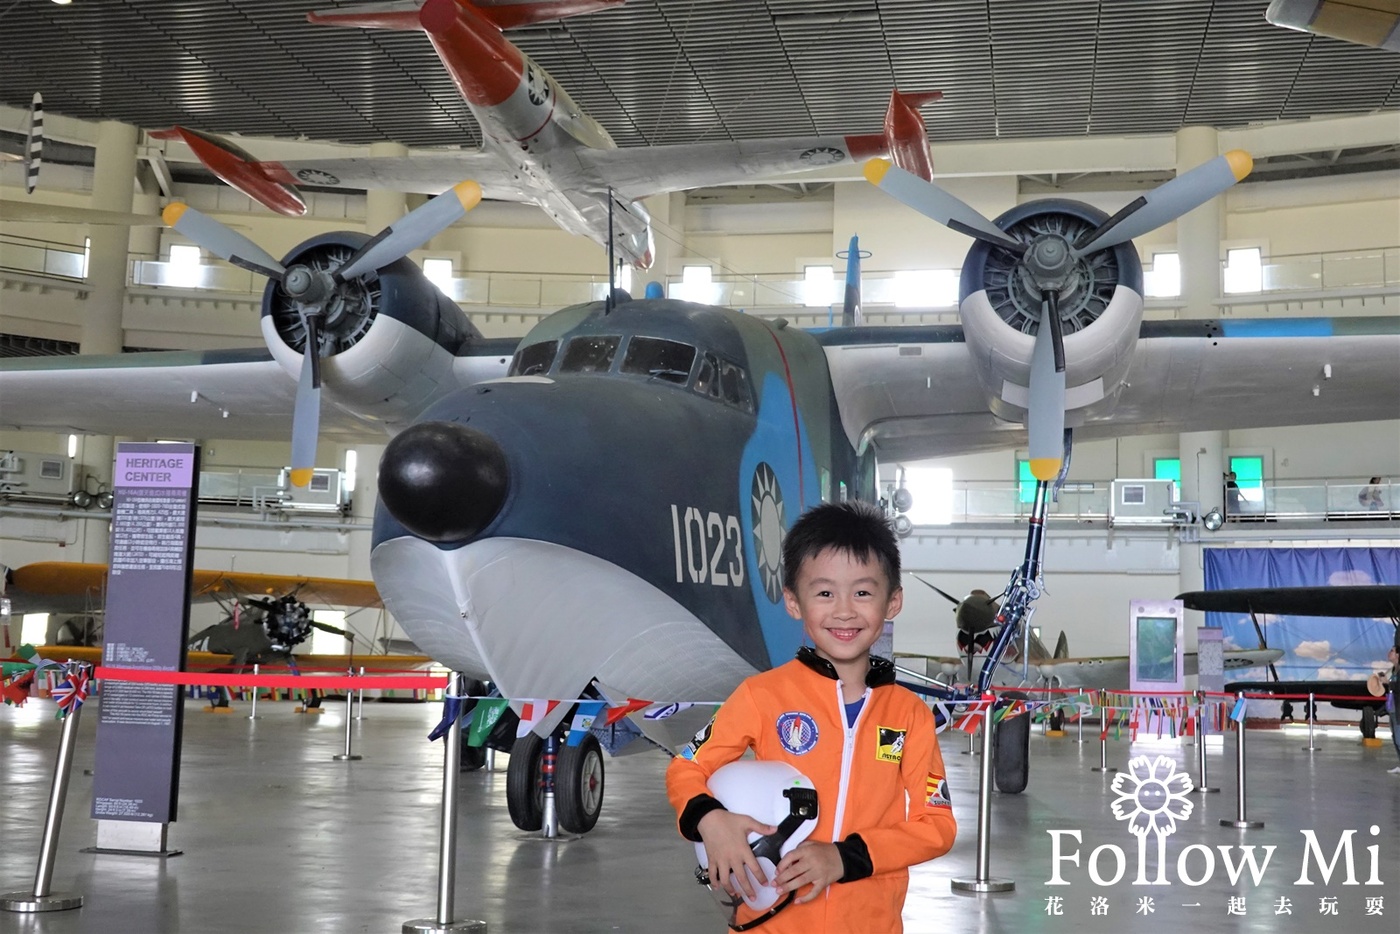 博物館,岡山區,戰鬥機展示,航空教育展示館,親子景點,高雄景點